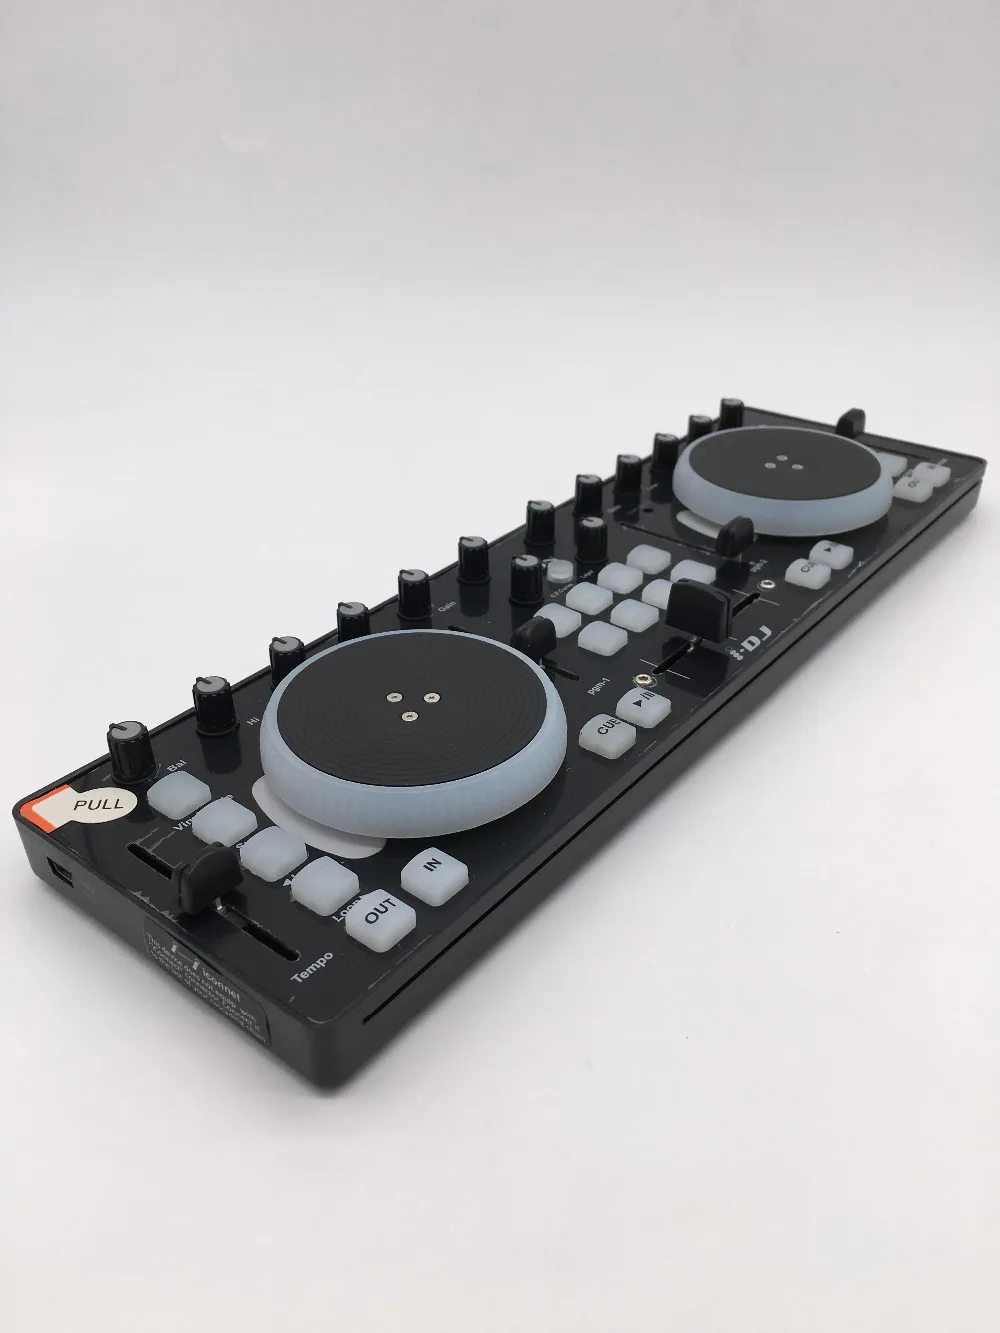 Значок i DJ сенсорный управляемый мини USB MIDI/DJ контроллер, маленький DJ контроллер на основе вертушки парадигмы